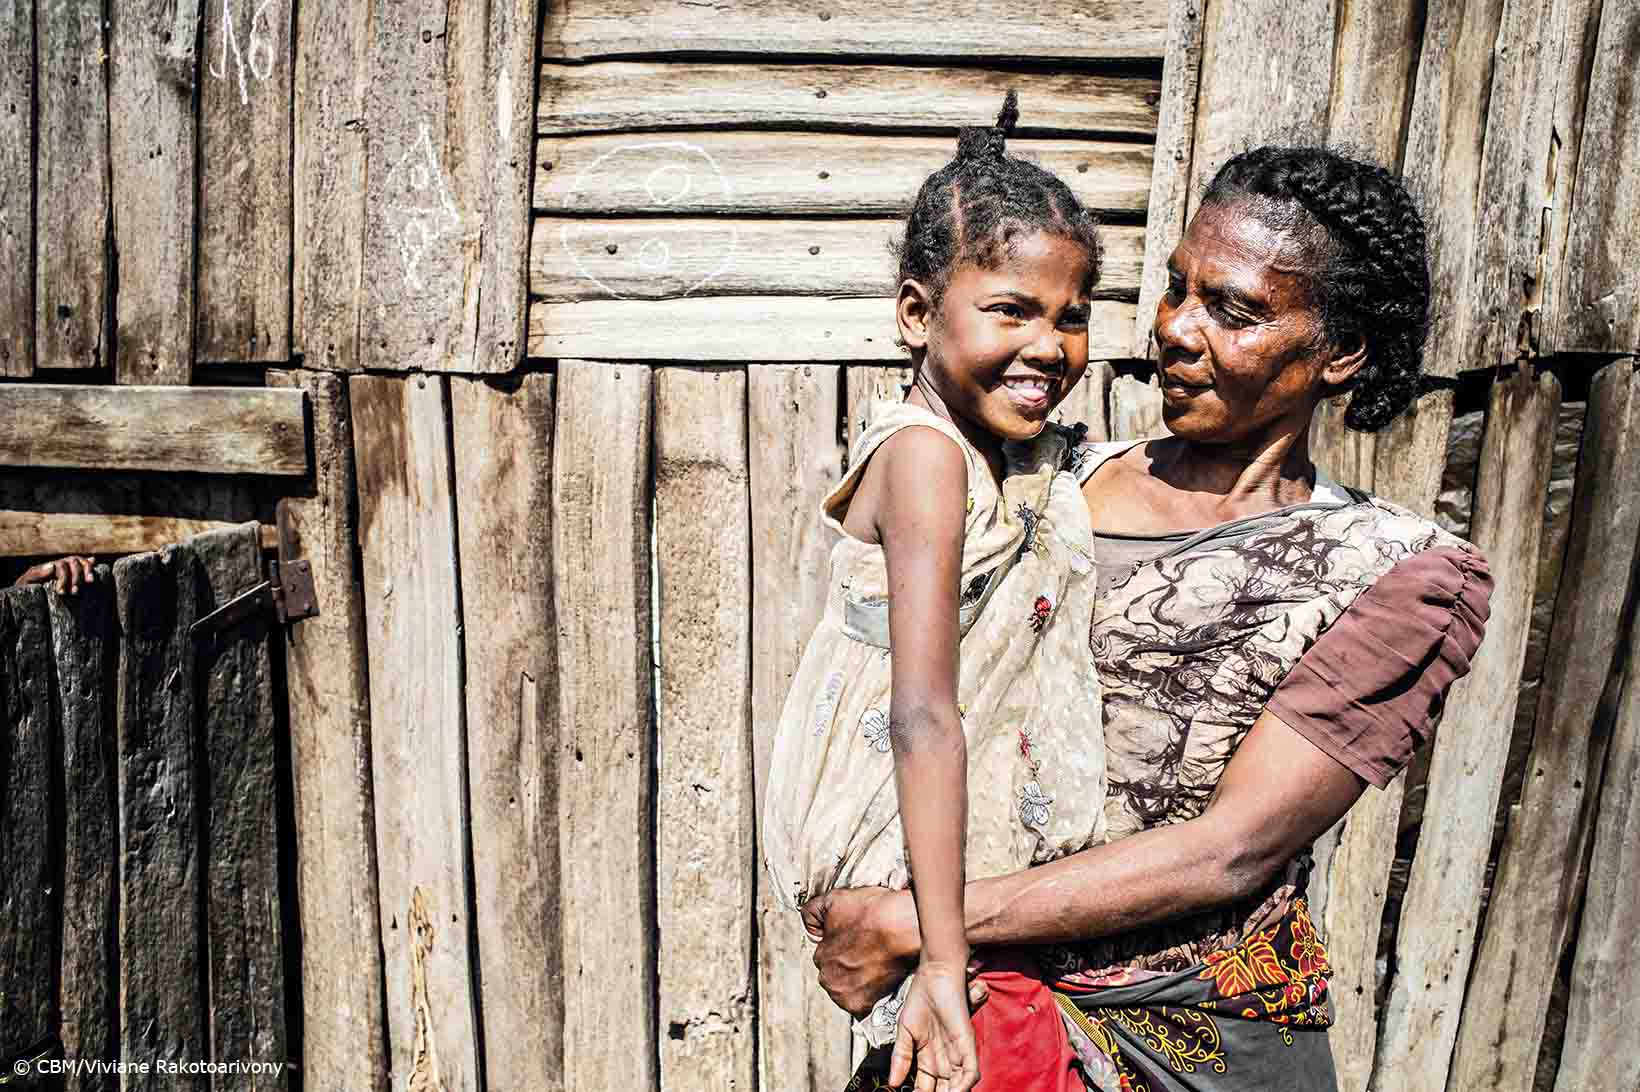 Frau mittleren Alters mit sorgfältig geflochtenen Haaren blickt ins vergnügte Gesicht eines kleinen Mädchens auf ihrem Arm. Die beiden stehen vor einem Bretterhäuschen im Süden von Madagaskar.